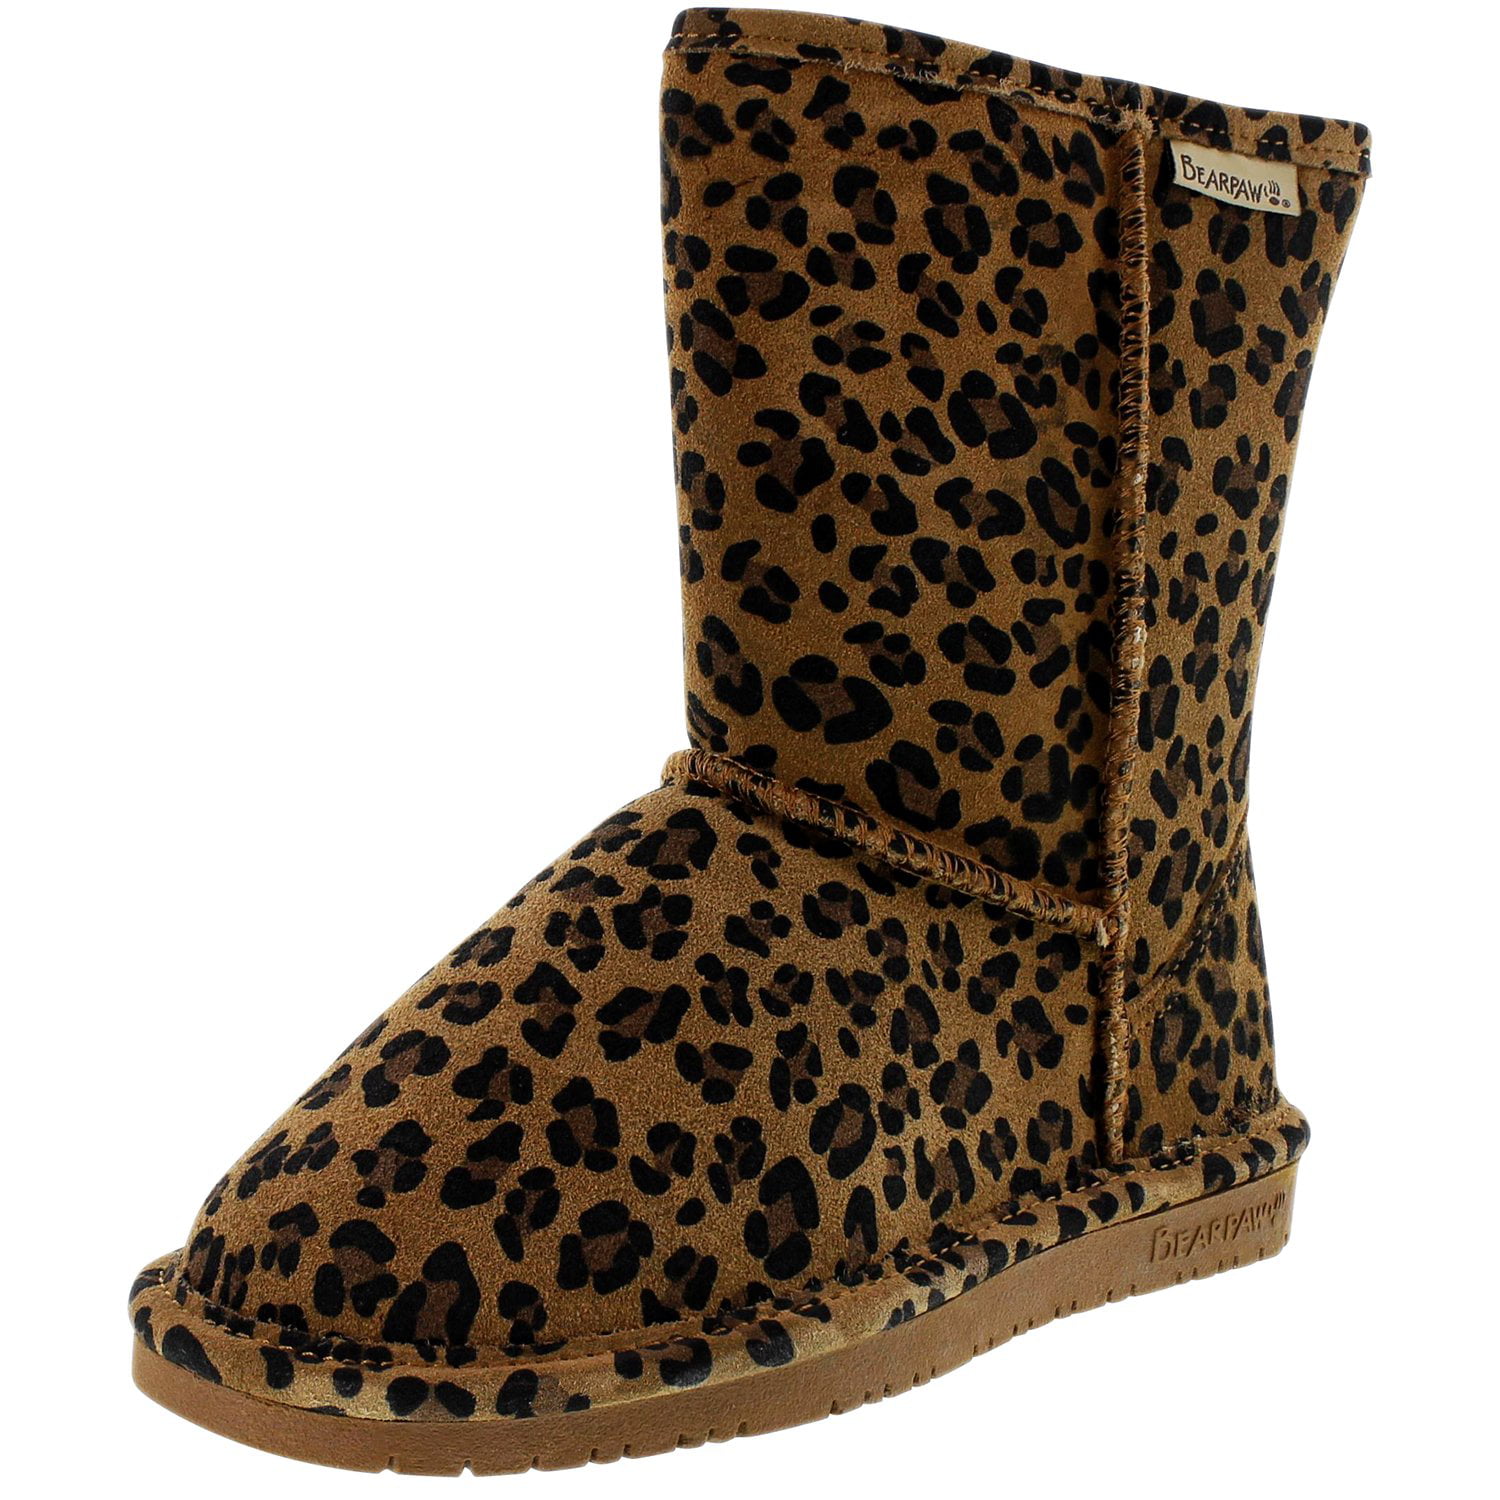 bearpaw leopard boots